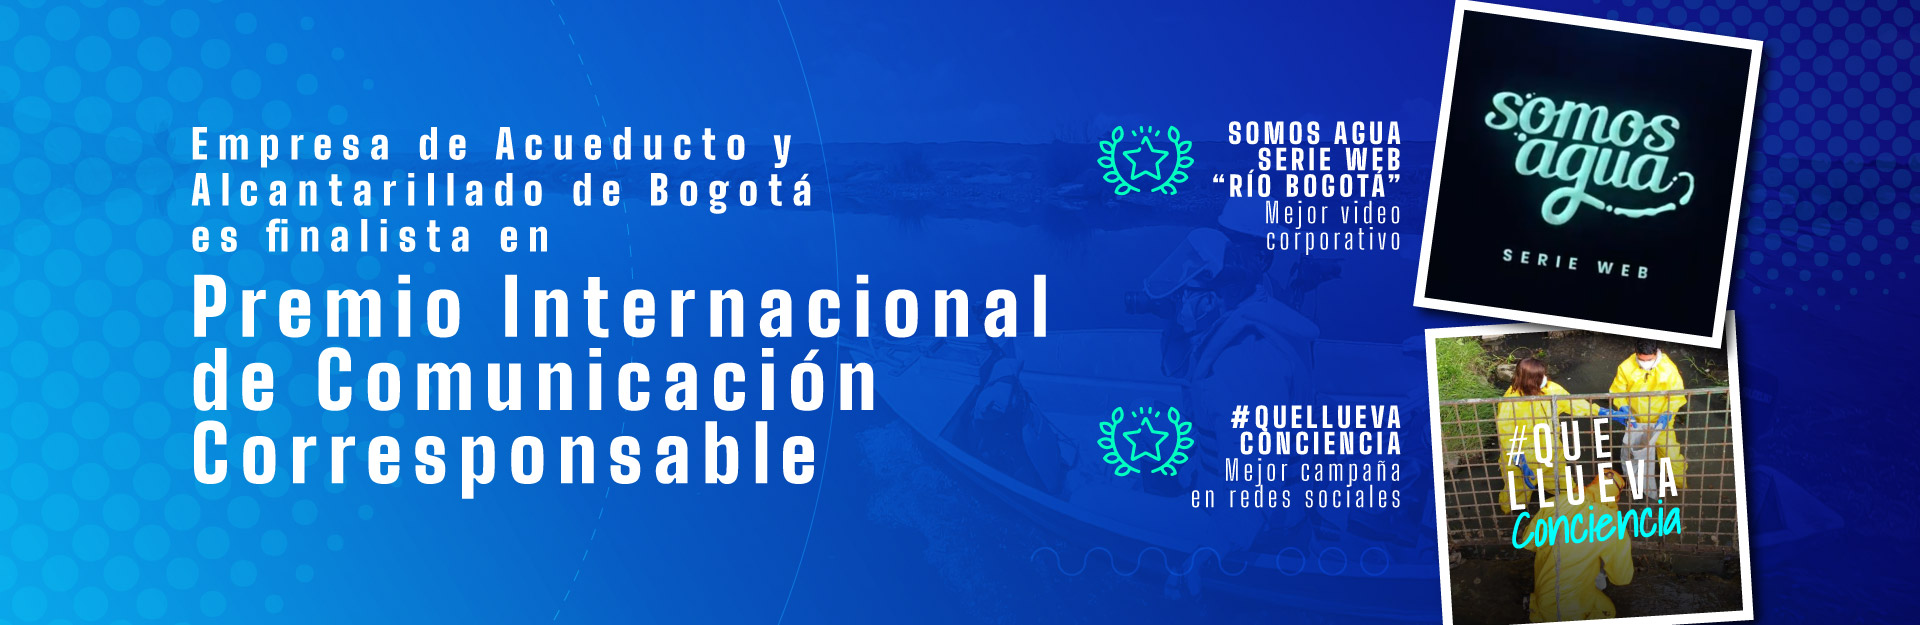 Empresa de Acueducto y Alcantarillado de Bogotá es finalista en premio internacional de comunicación corresponsable